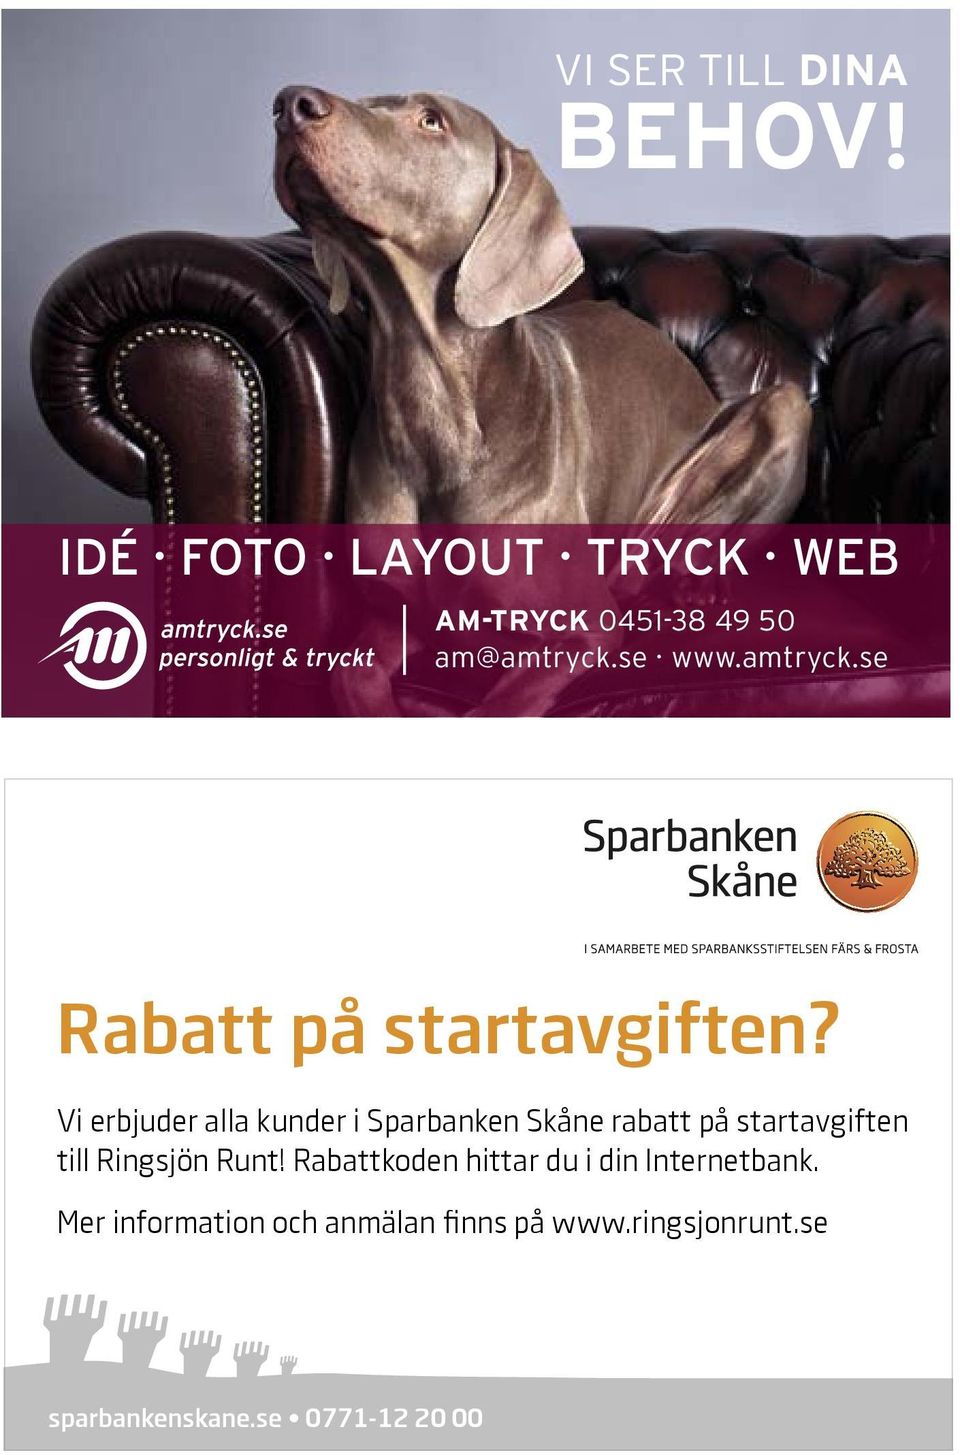 Vi erbjuder alla kunder i Sparbanken Skåne rabatt på startavgiften till Ringsjön Runt!